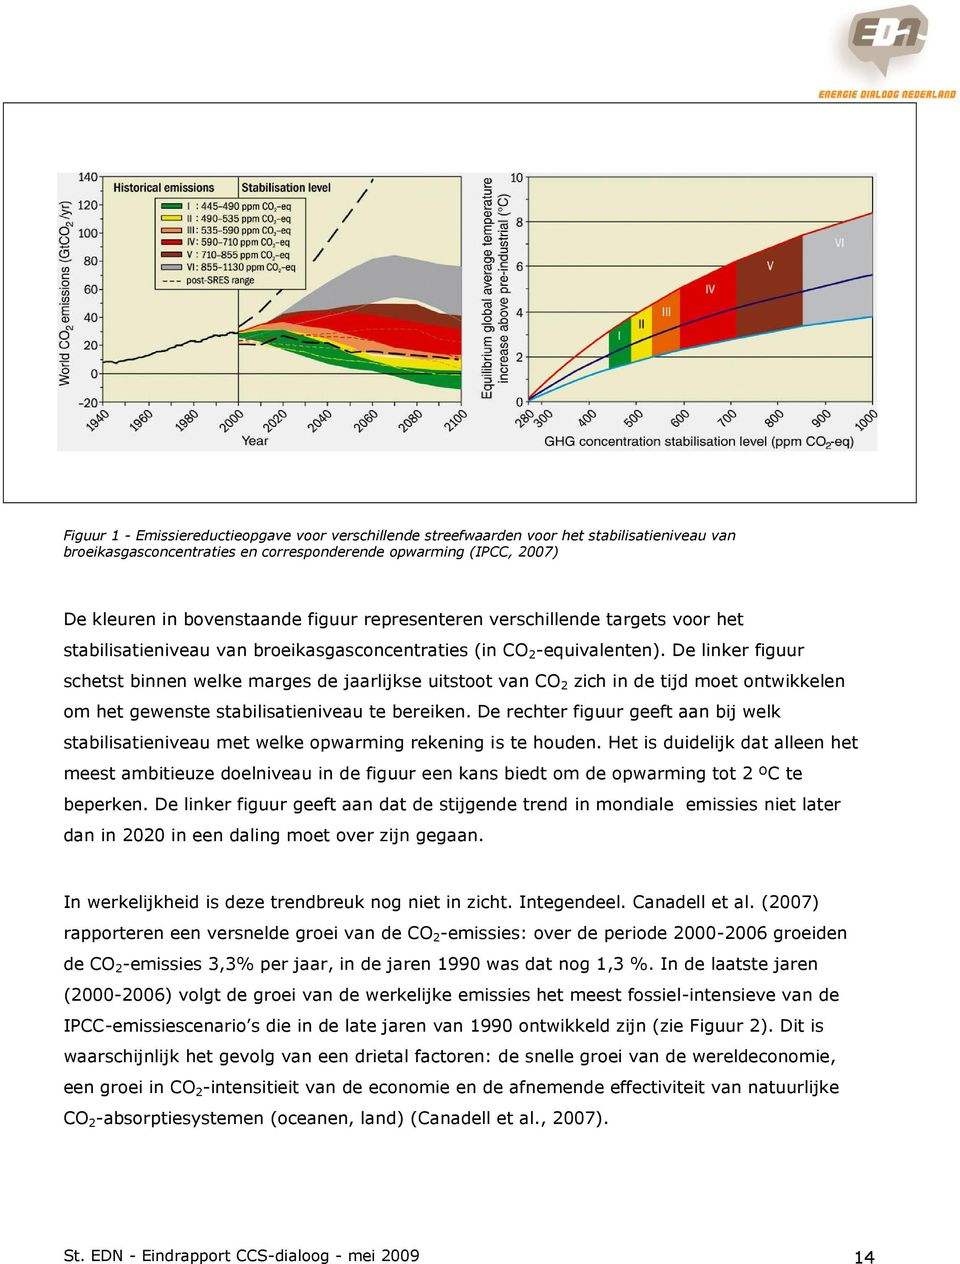 De linker figuur schetst binnen welke marges de jaarlijkse uitstoot van CO 2 zich in de tijd moet ontwikkelen om het gewenste stabilisatieniveau te bereiken.